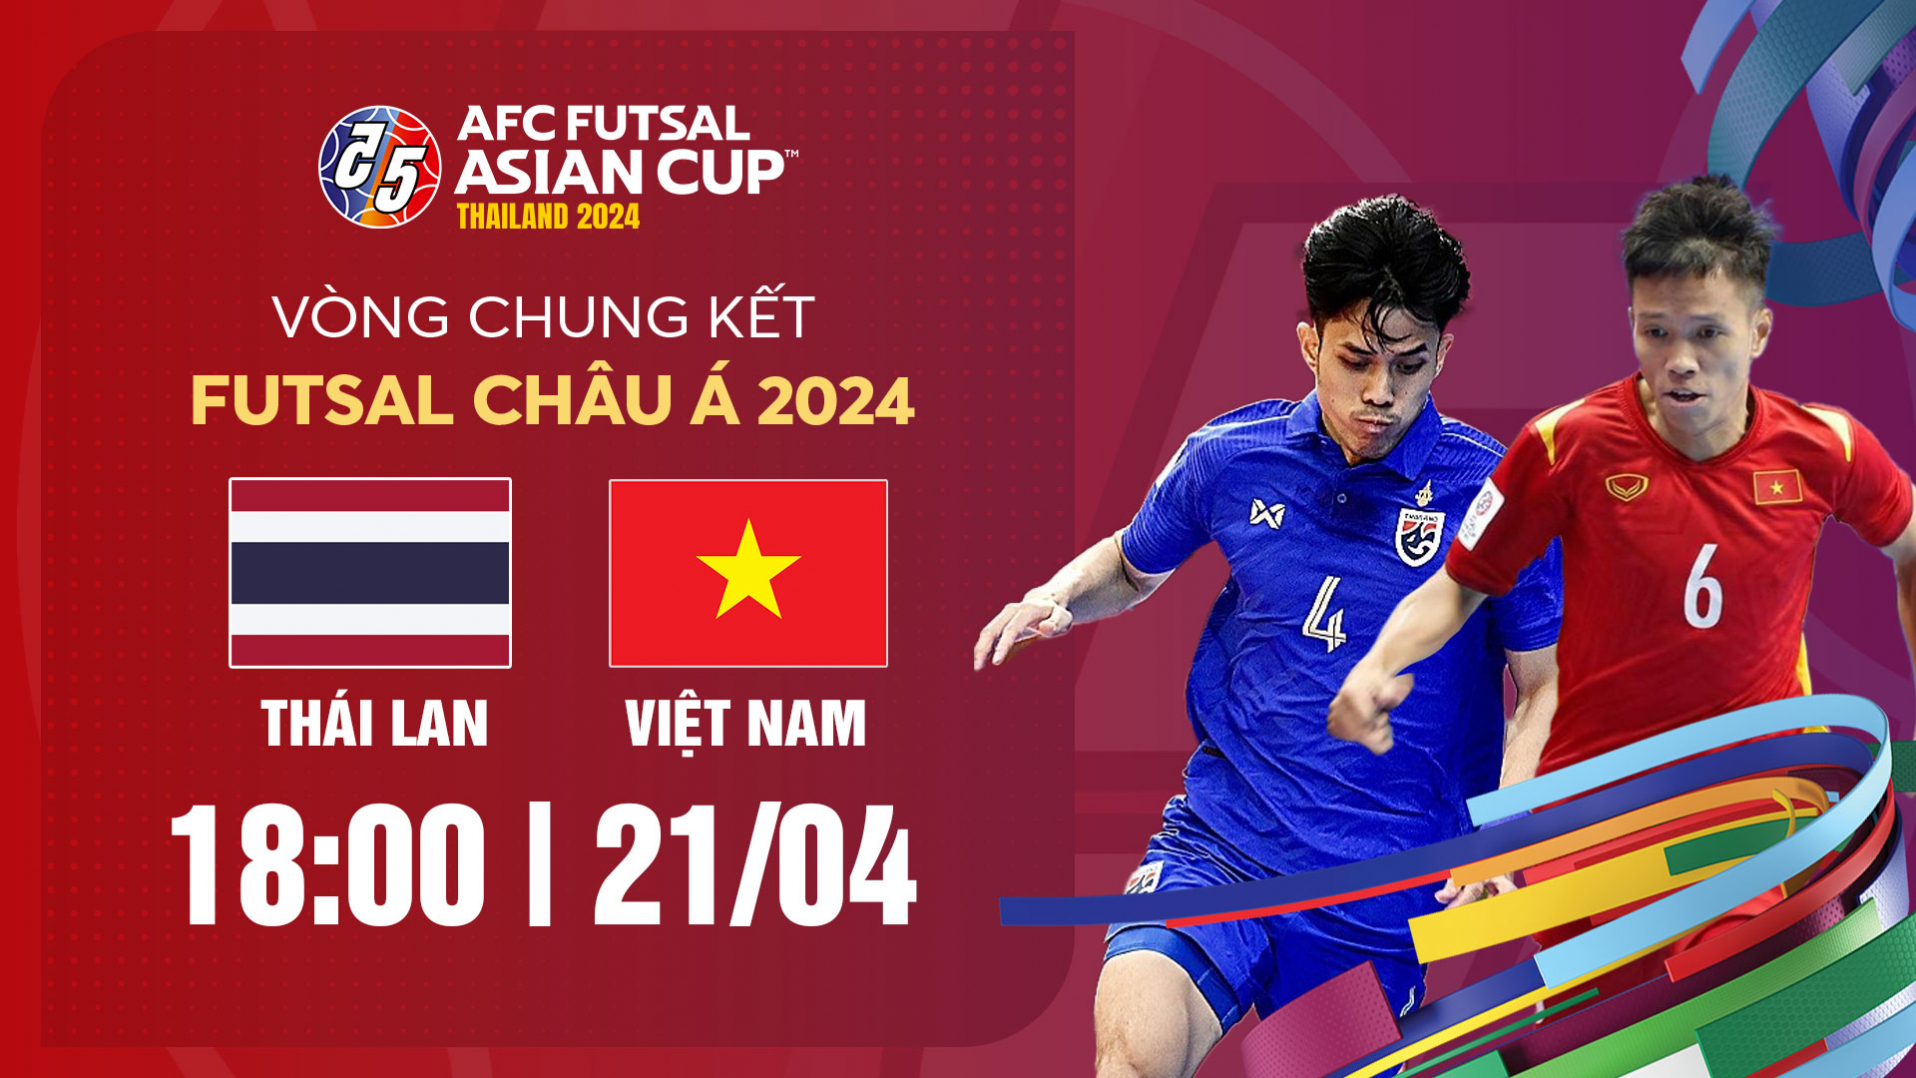 Thái Lan vs Việt Nam: Vòng bảng AFC Futsal Asian Cup Thailand 2024